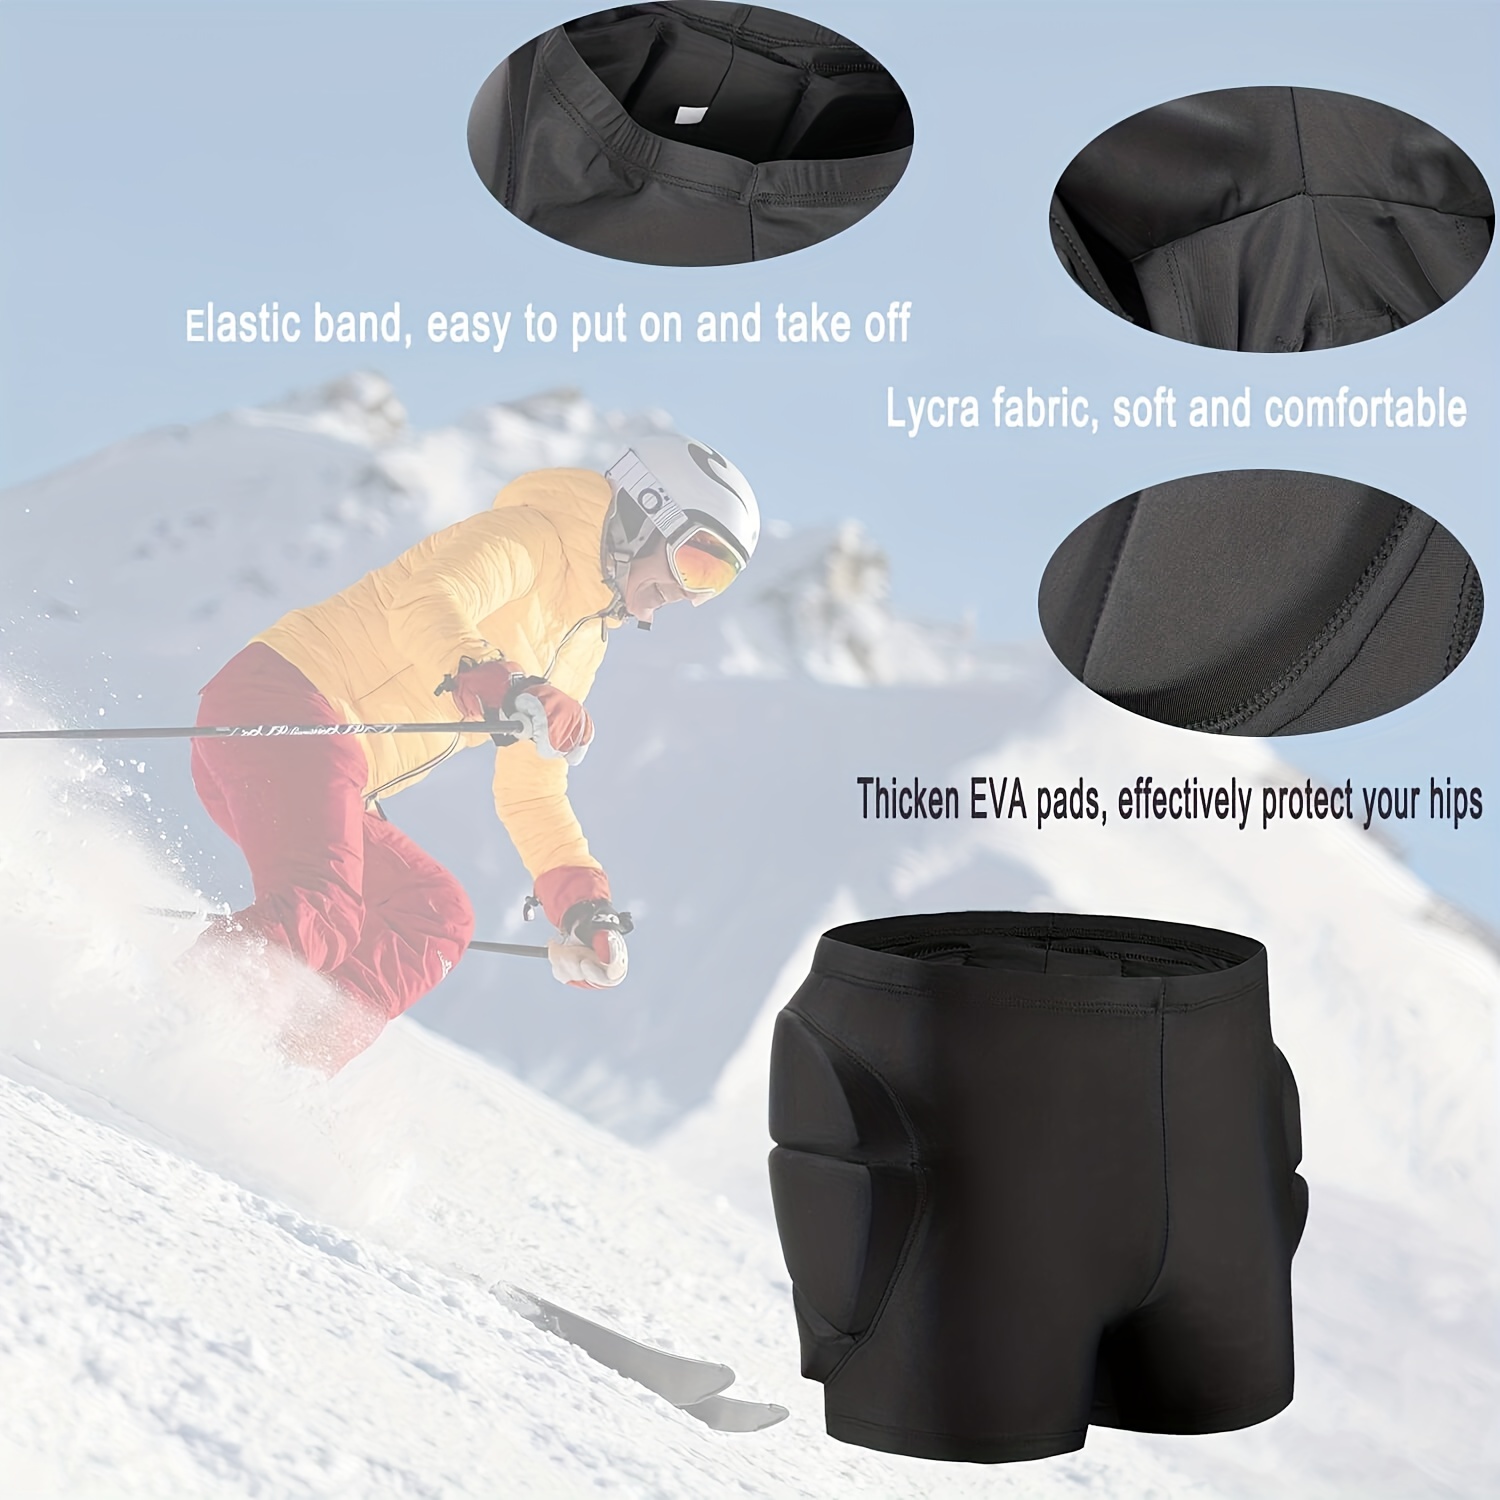 Acquista Pantaloncini imbottiti con protezione per i fianchi, protezione  per i fianchi, armatura, per snowboard, pattinaggio, sci, equitazione